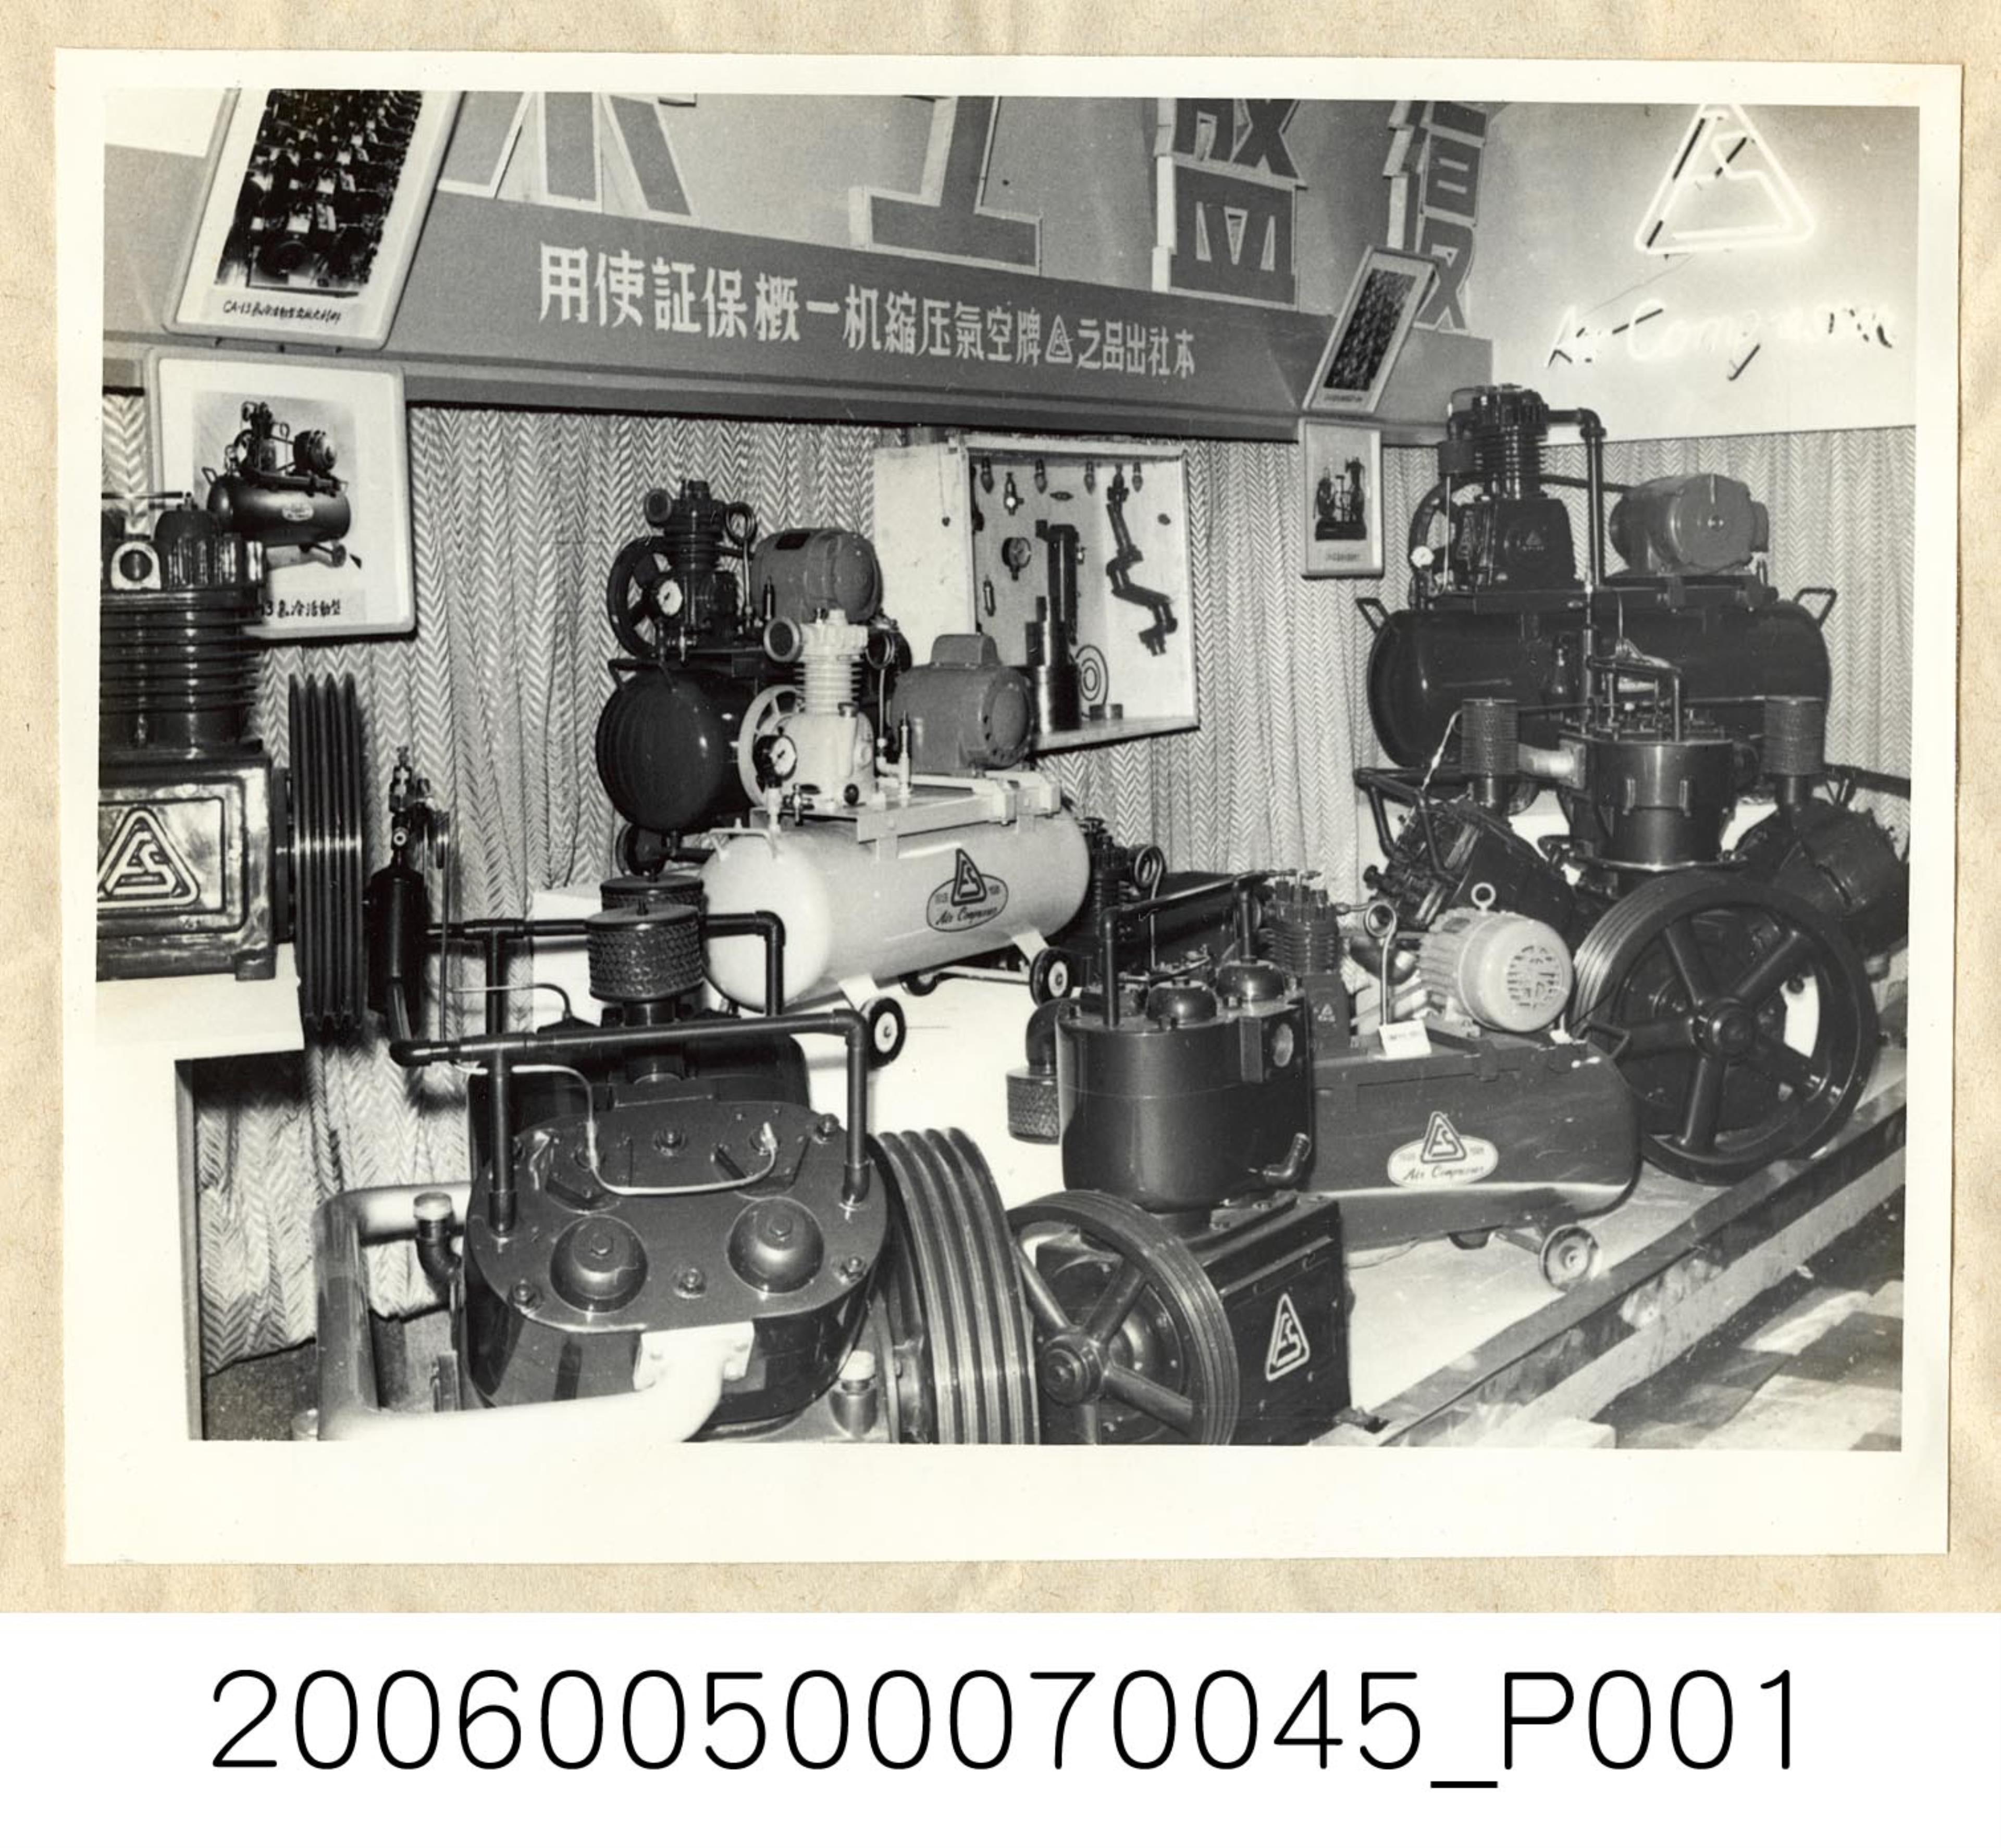 《華僑通訊社新聞照片集》〈國產品空氣壓縮機等〉 (共1張)